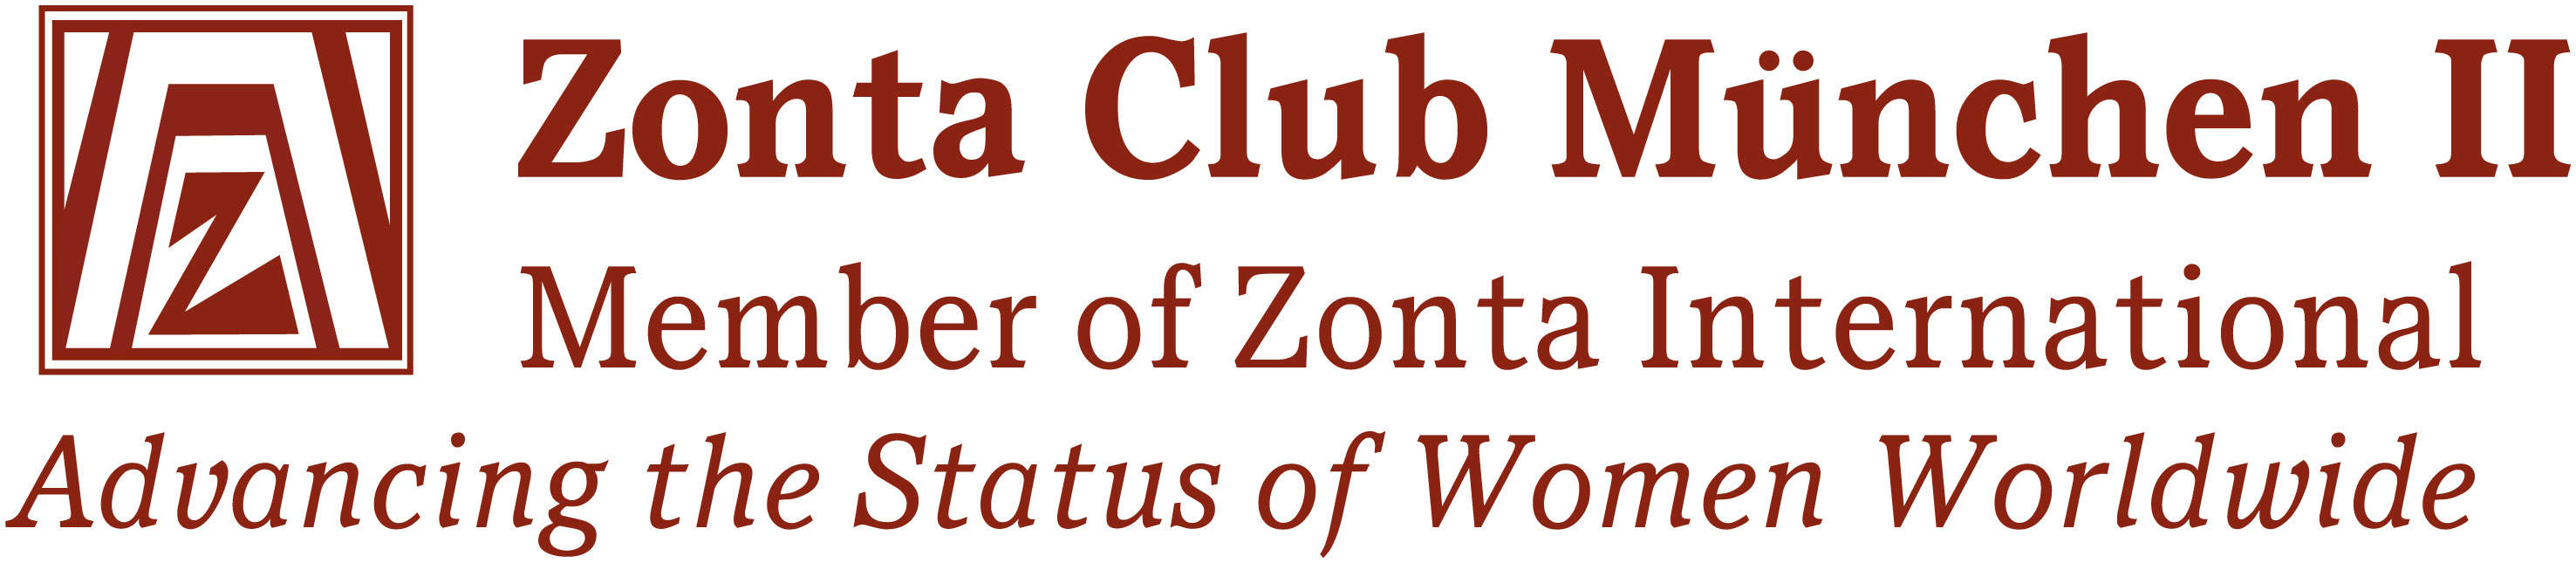 ZONTA-Club-Muenchen-II-Logo-P1815